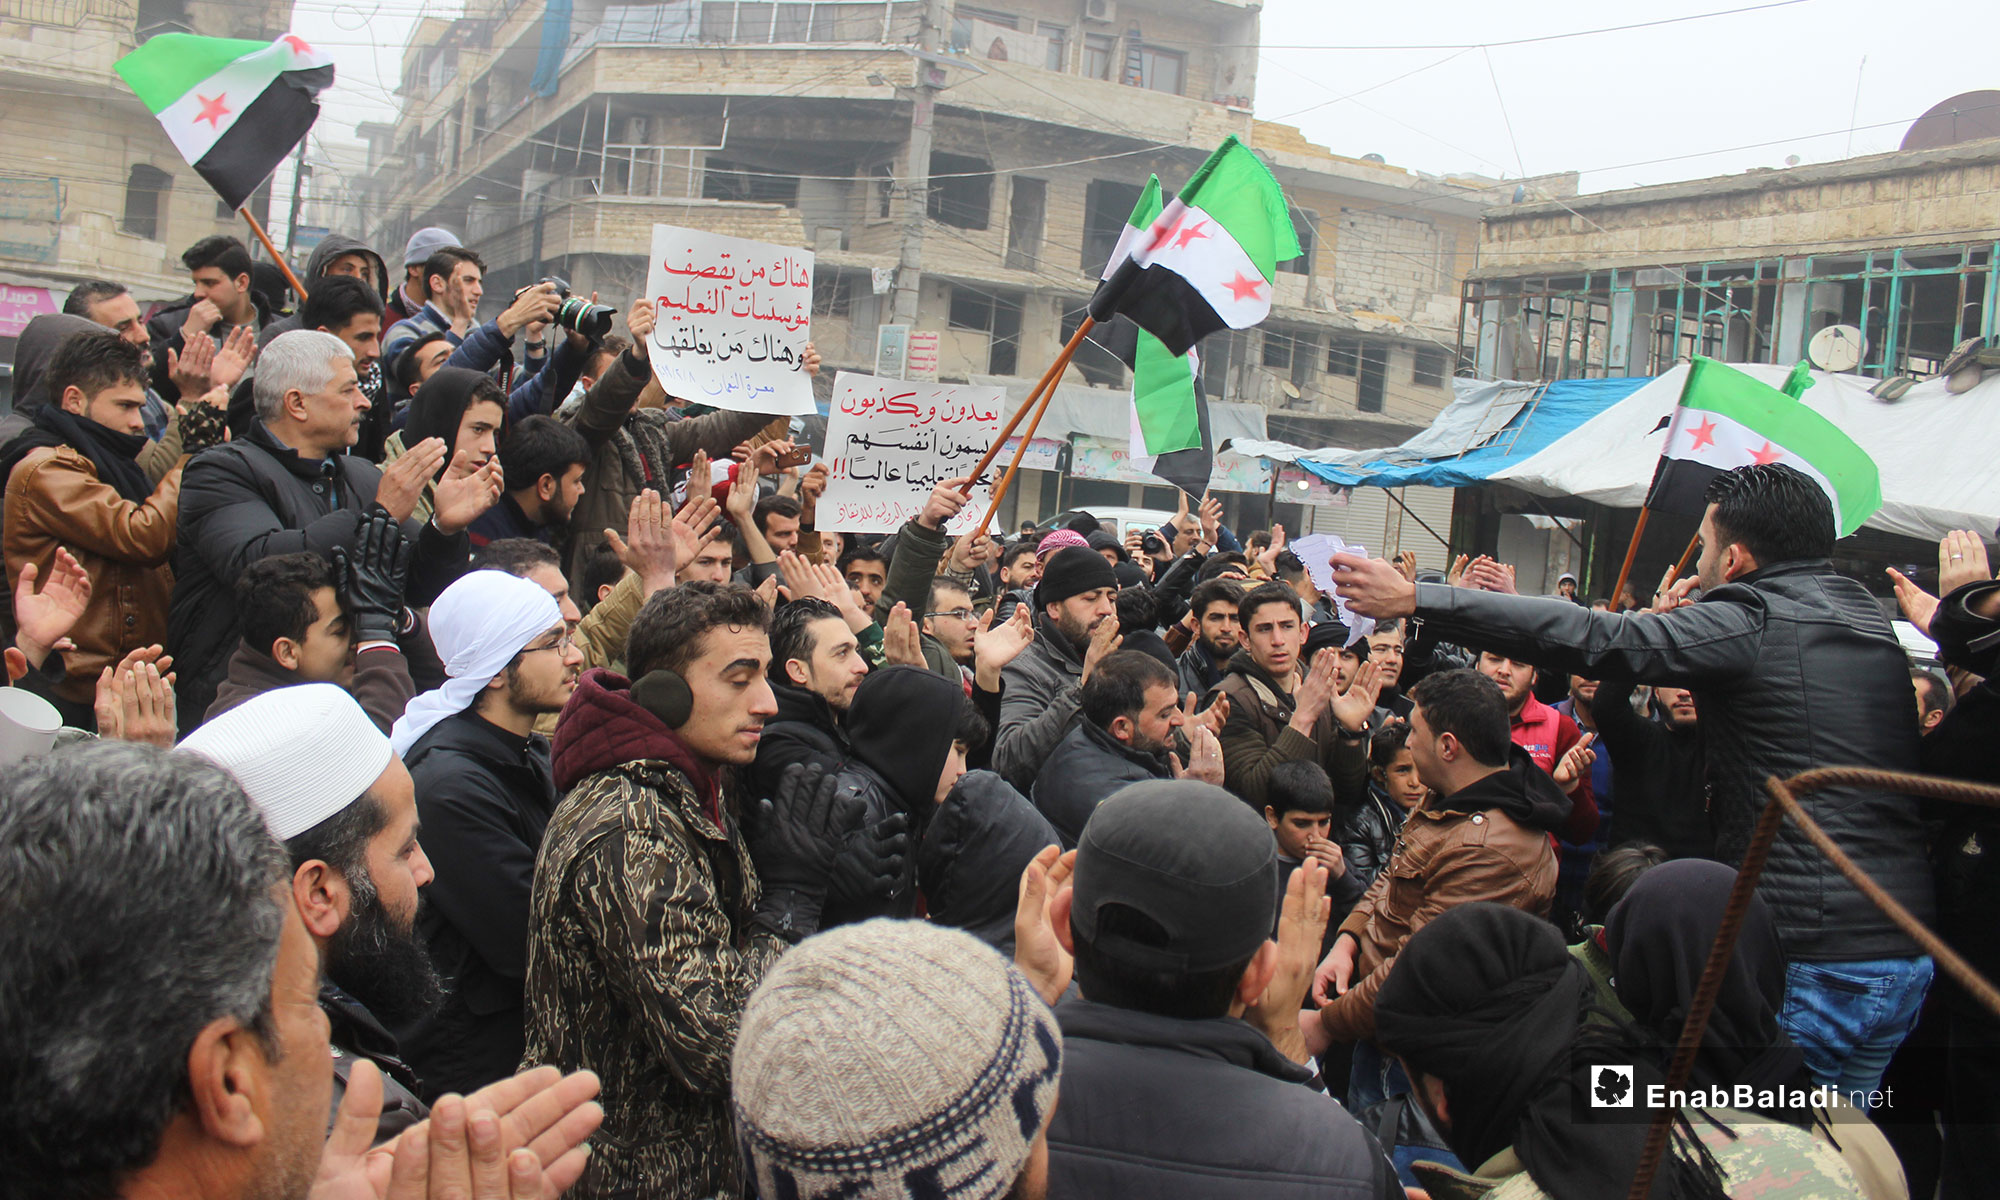 مظاهرة في معرة النعمان تندد بقرار إغلاق جامعة الإنقاذ في ريف إدلب - 8 من شباط 2019 (عنب بلدي)